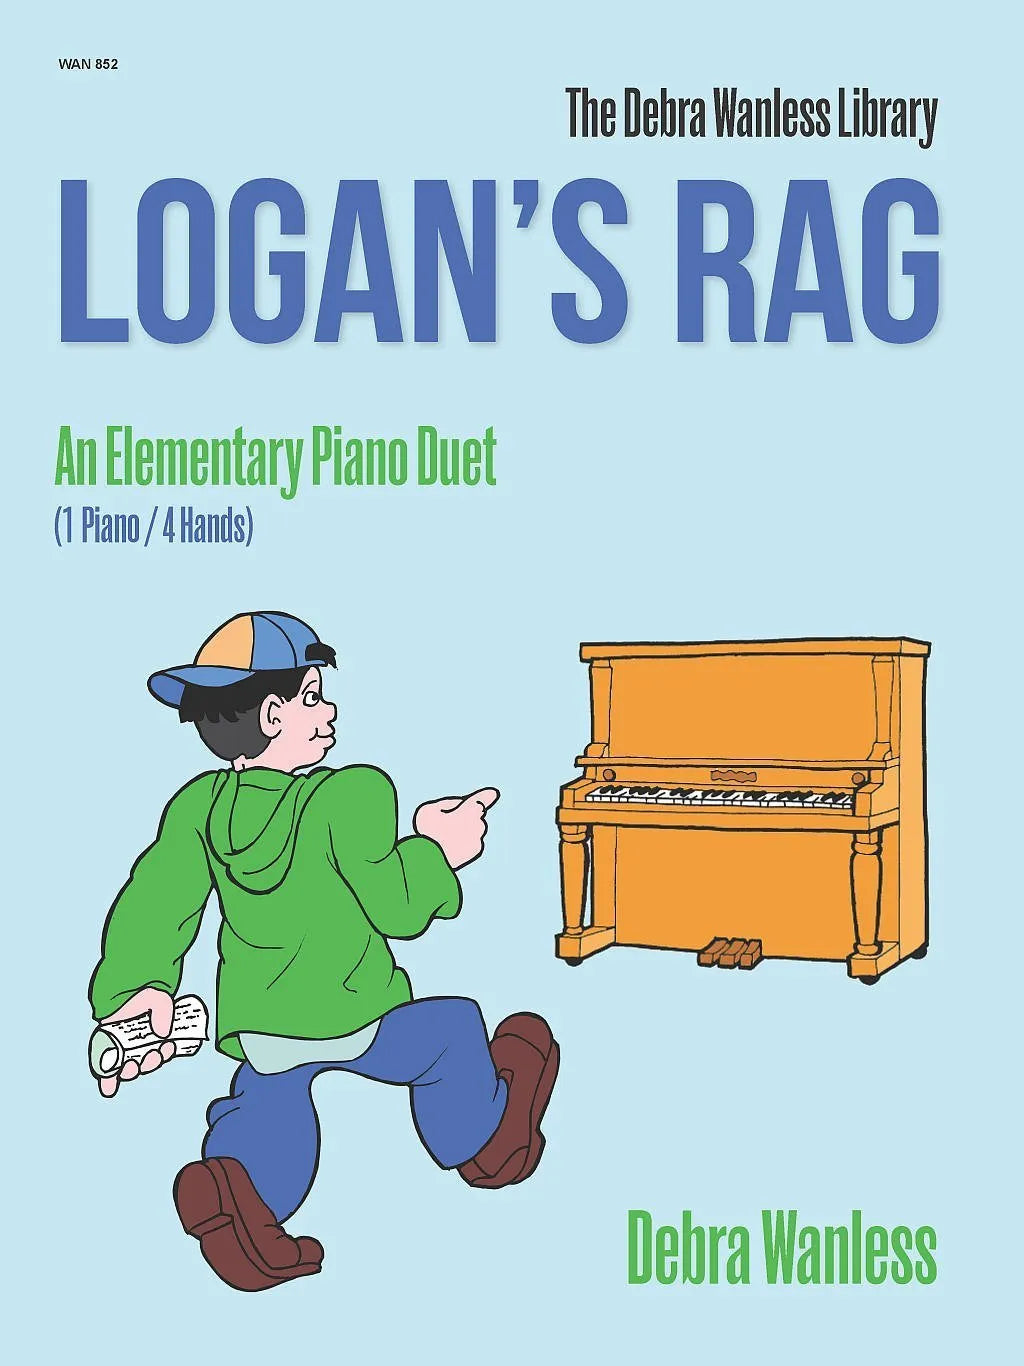 Logan’s Rag